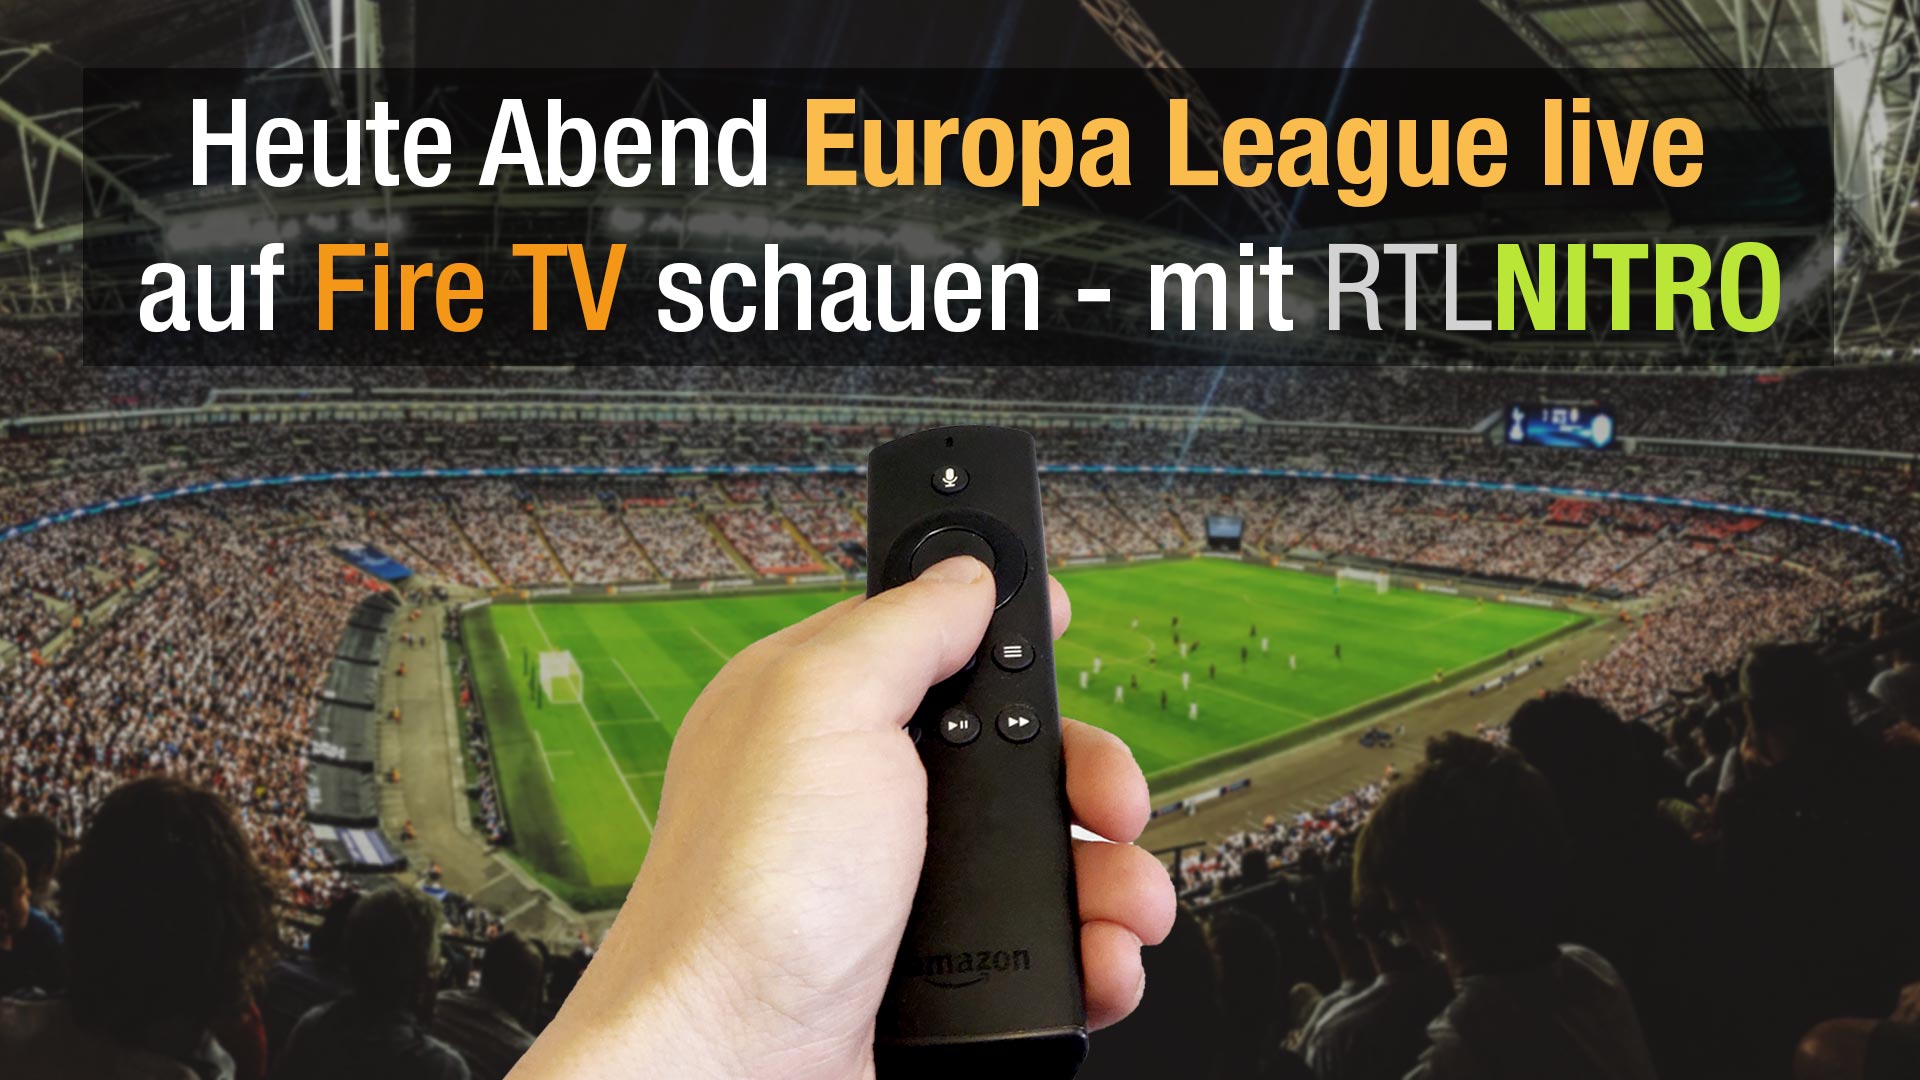 Europa-League heute Abend Live mit dem Fire TV schauen mit RTL Nitro!